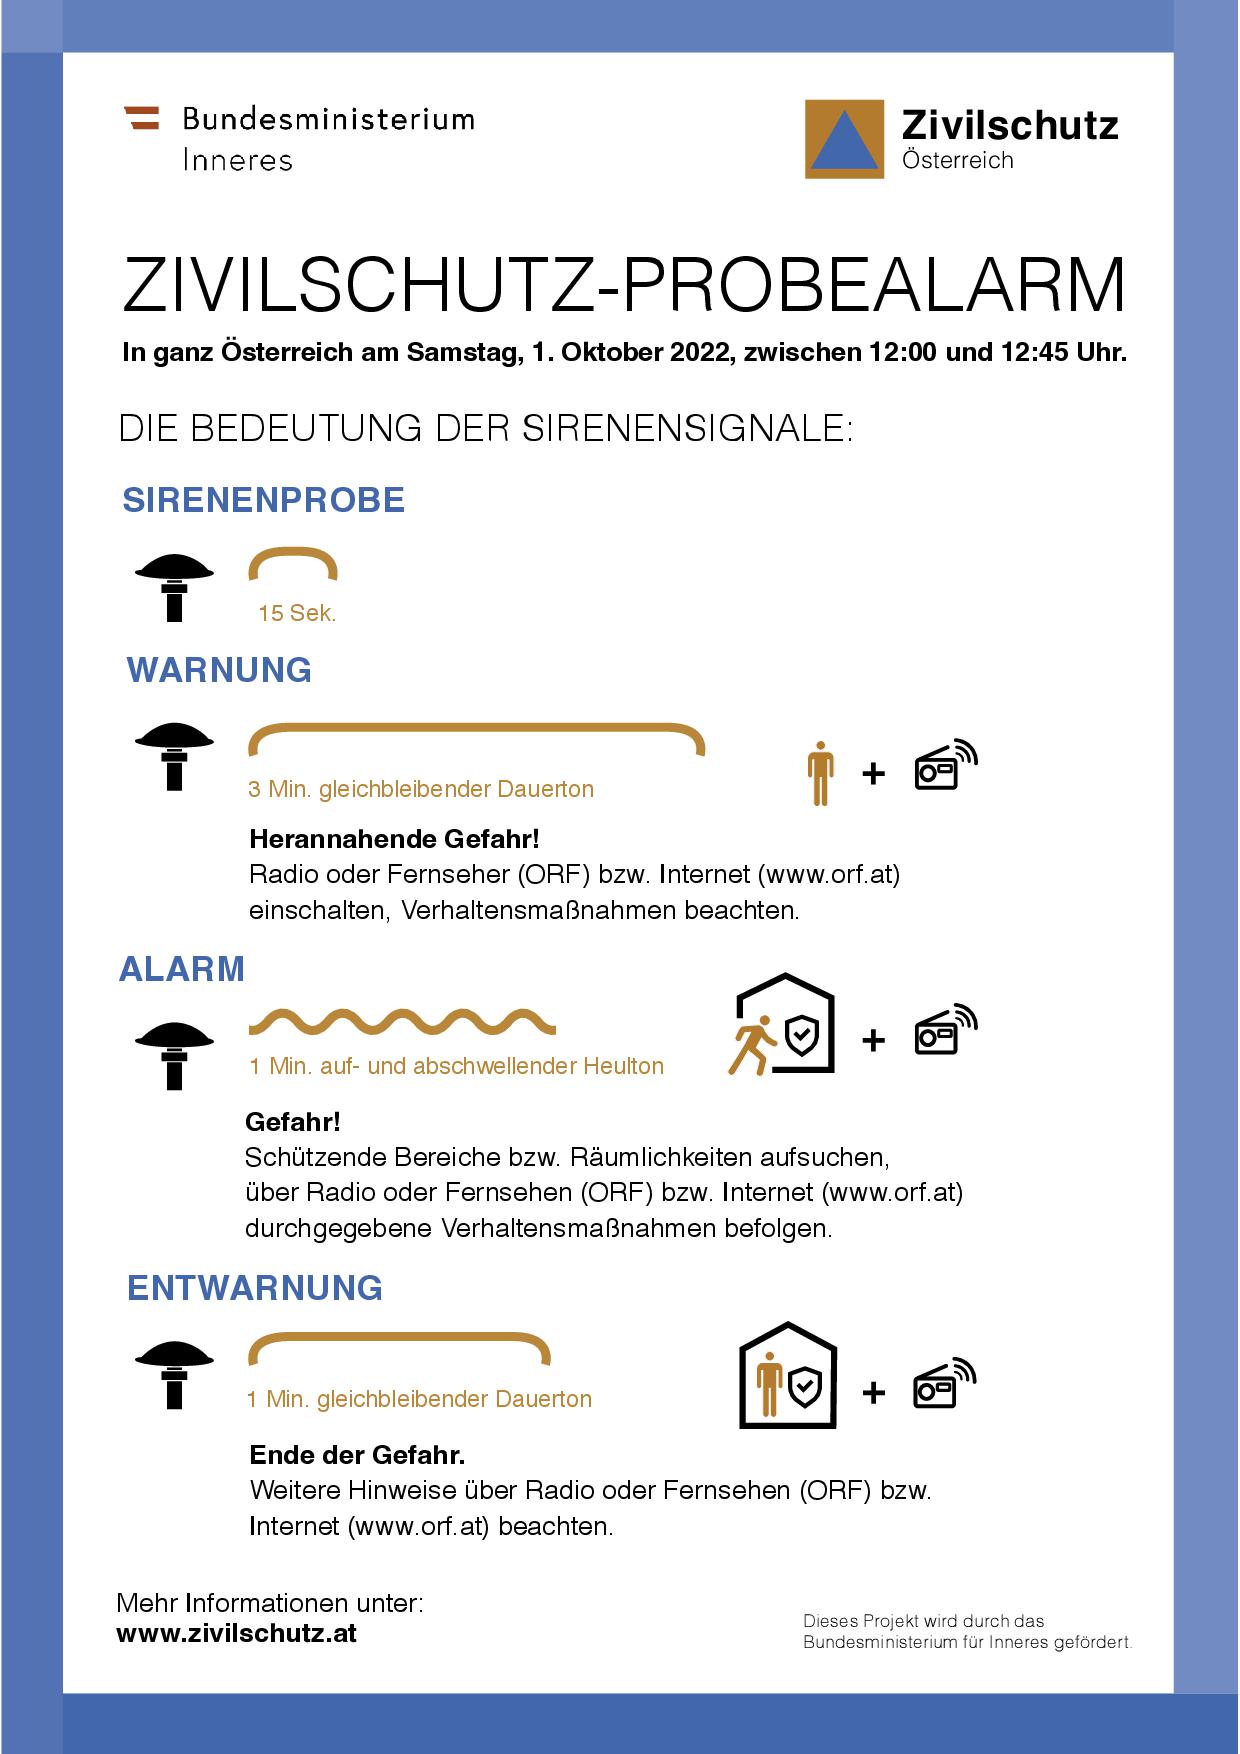 Zivilschutz Probealarm 2022 - Sirenensignale